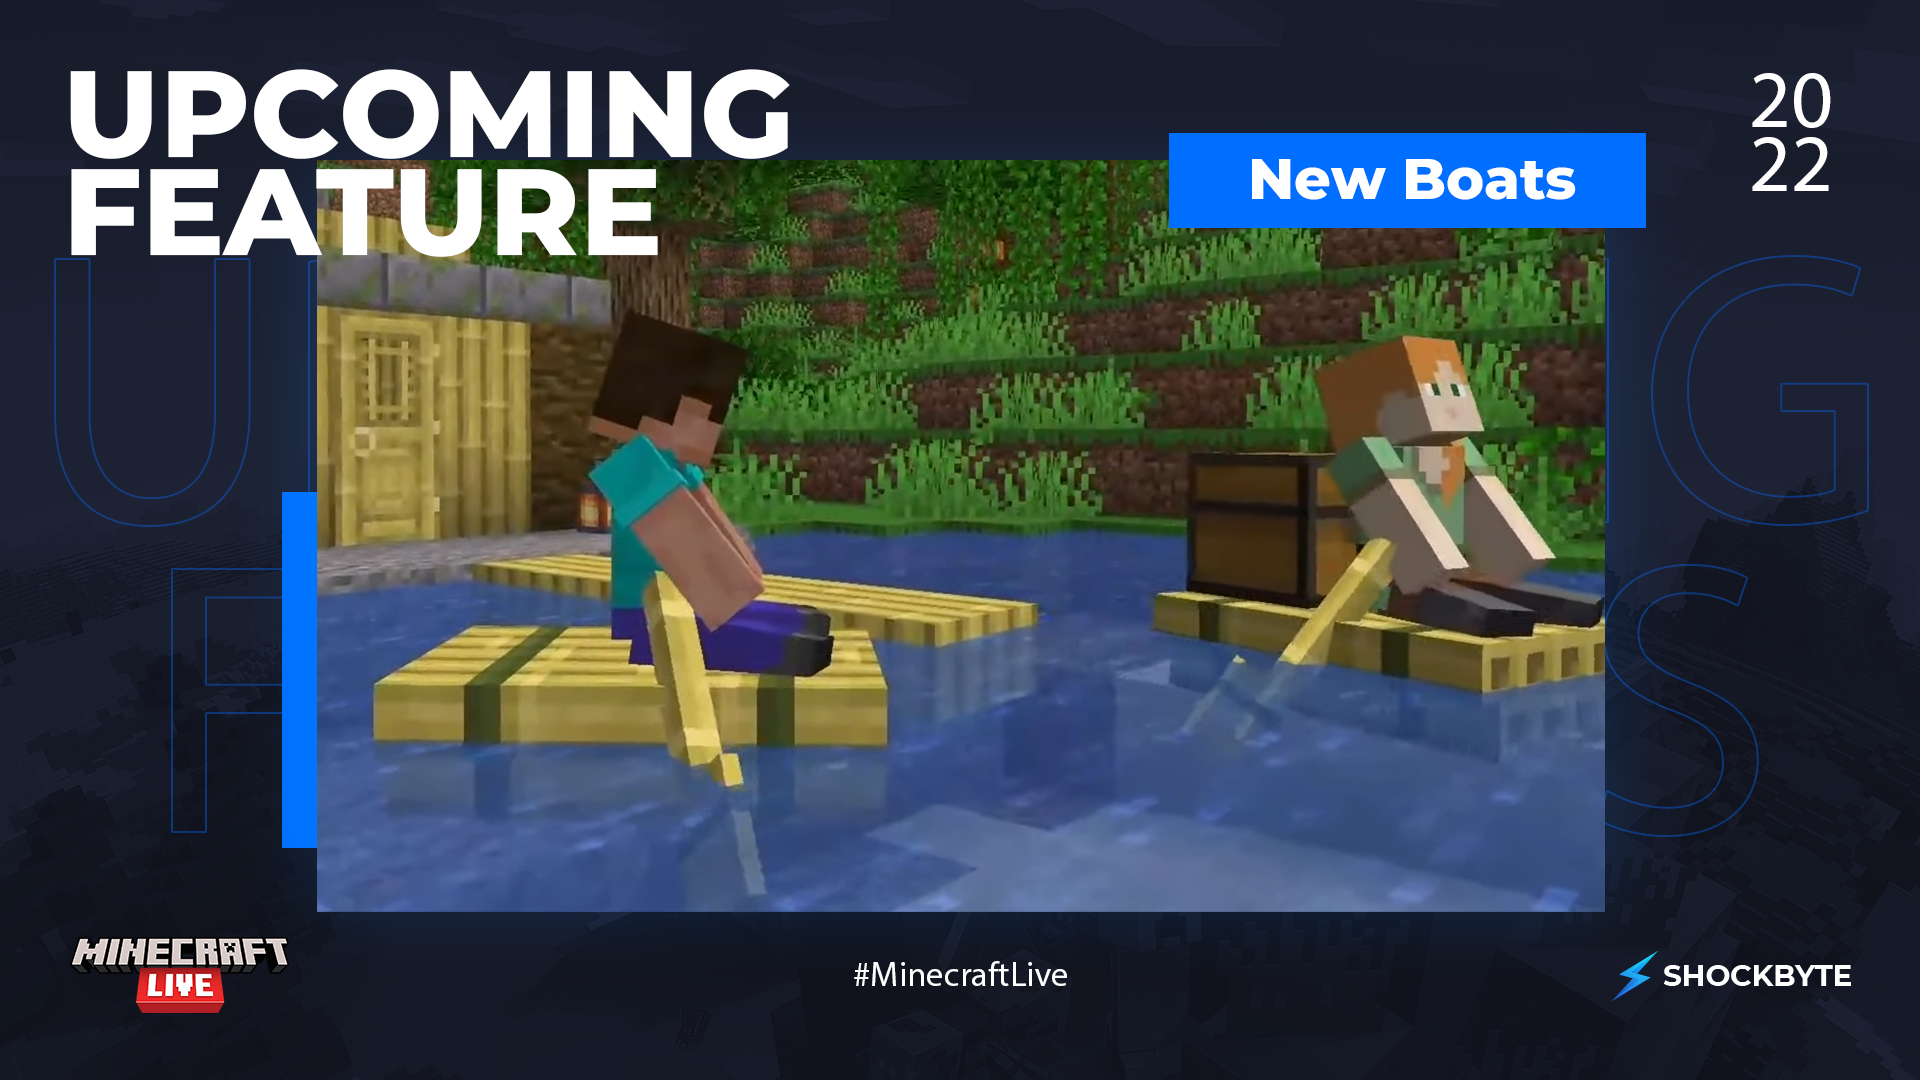 Captura de pantalla de la característica de actualización de Minecraft Live Boat